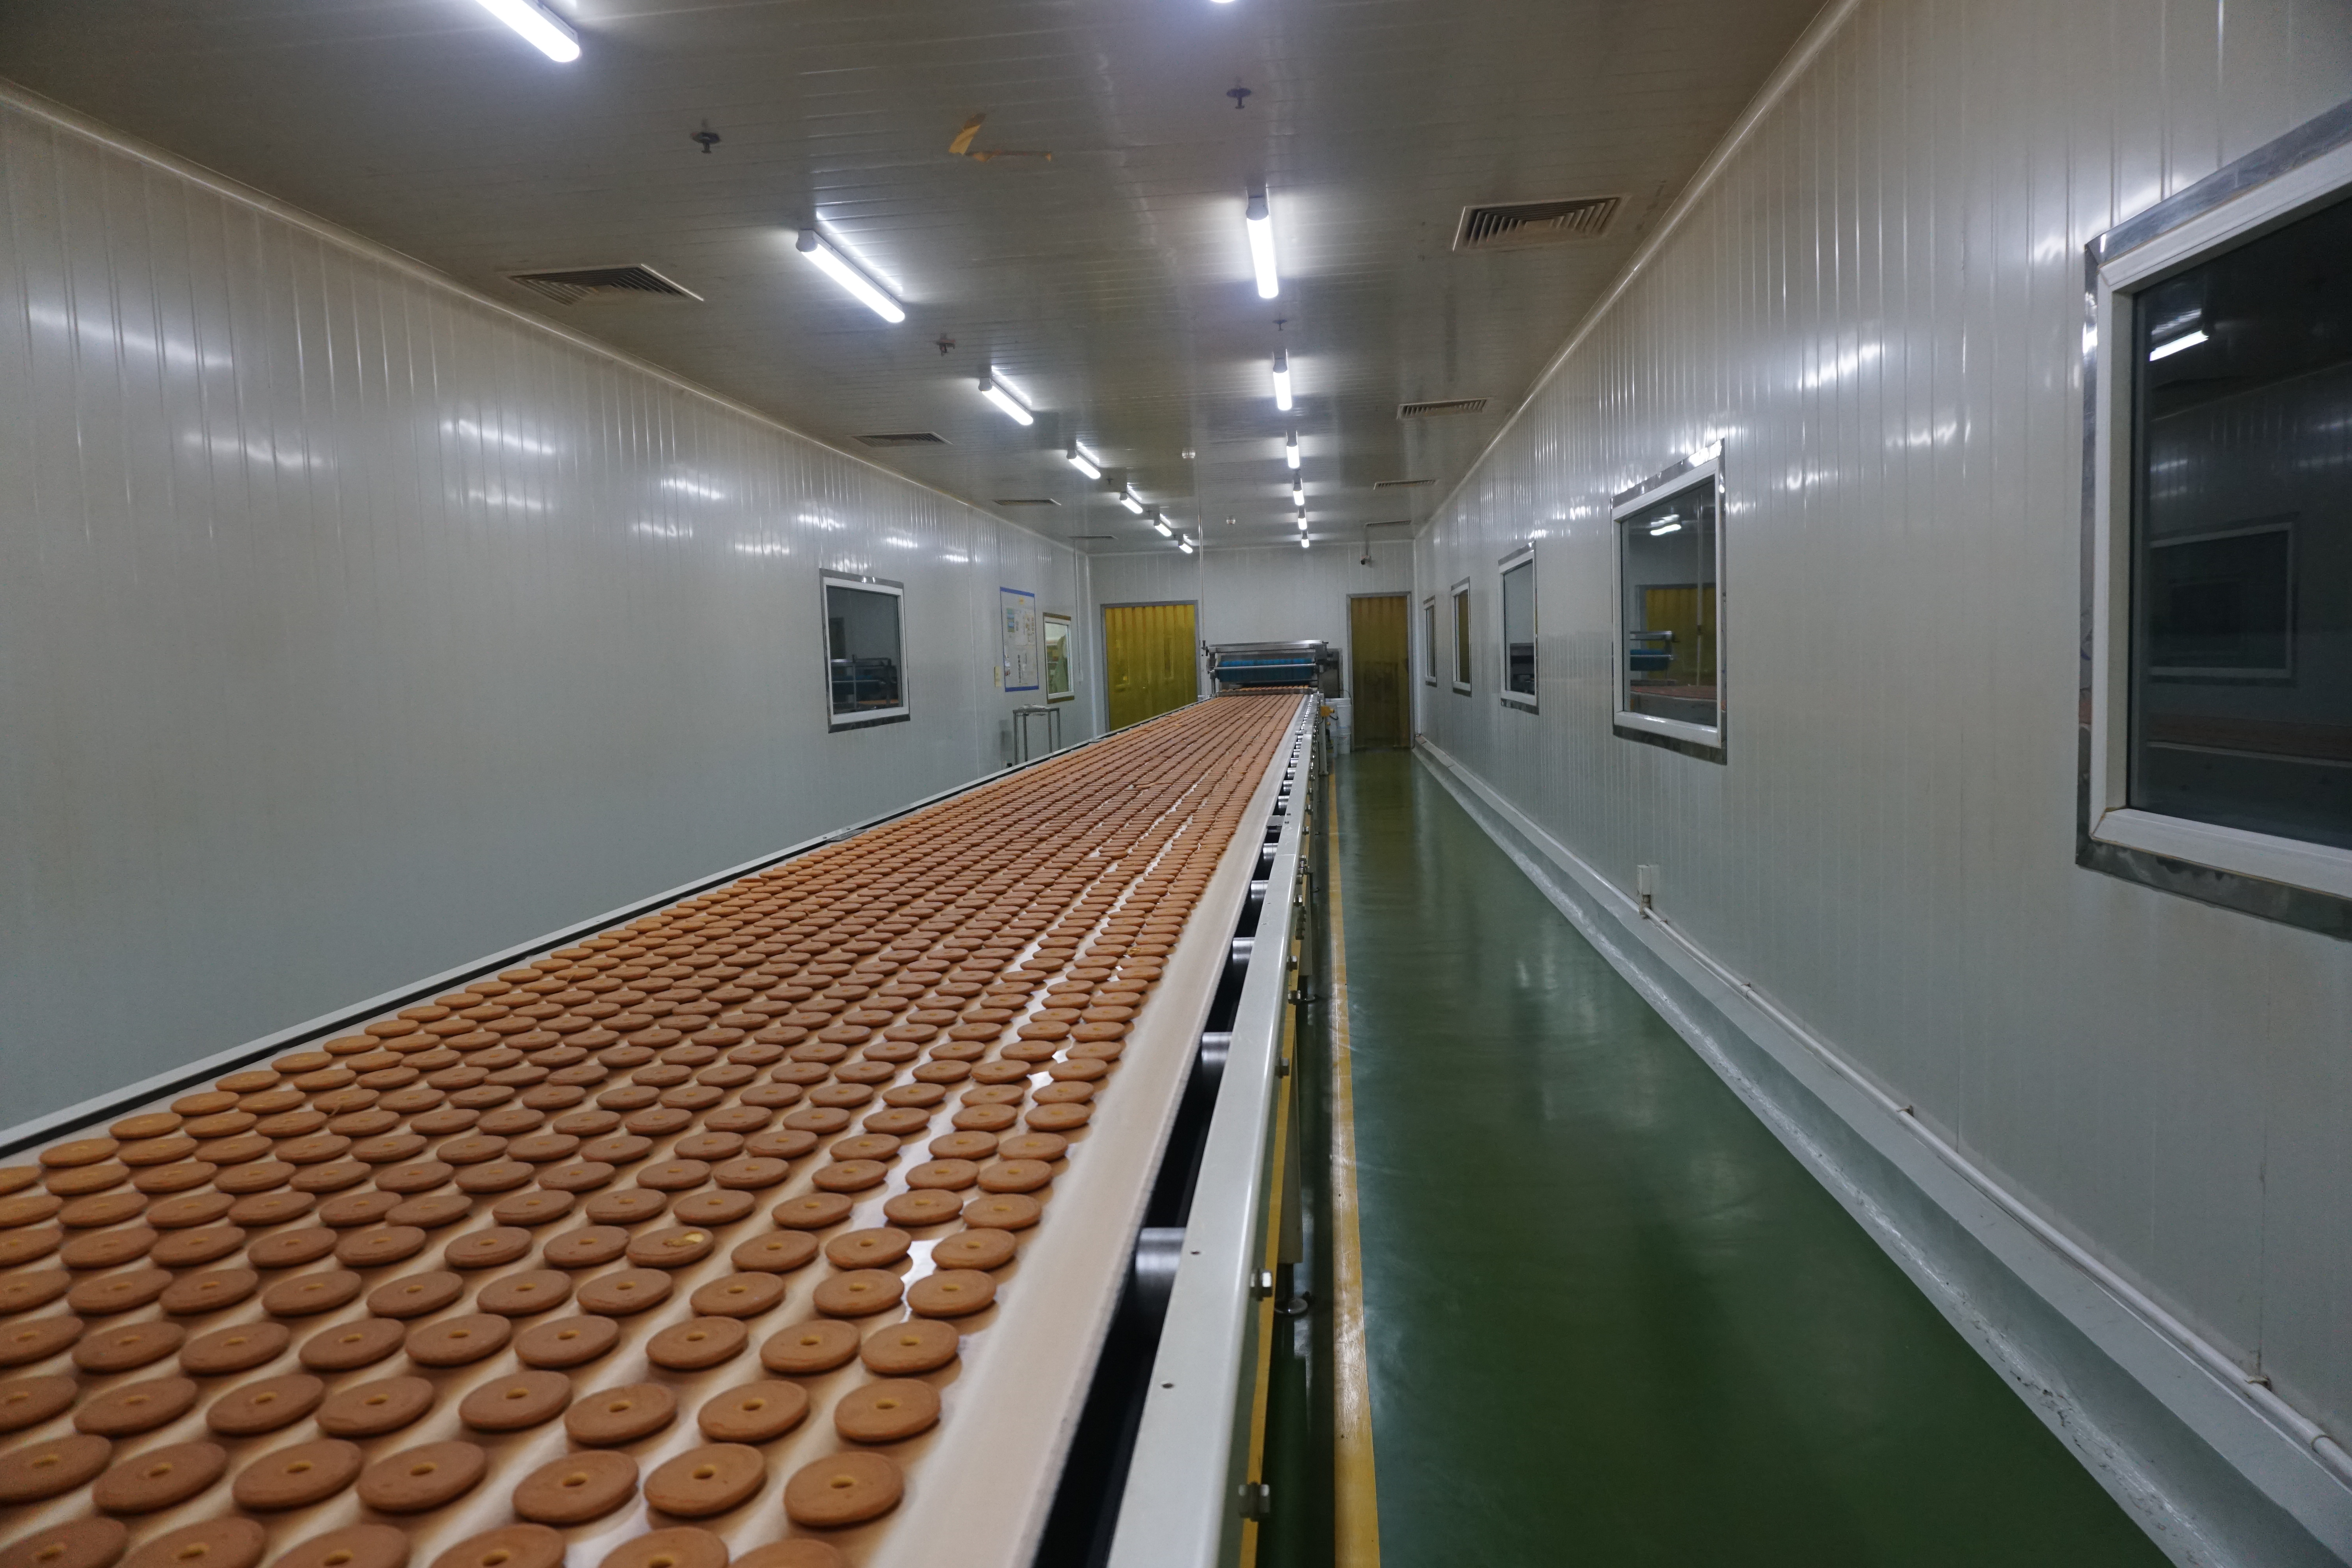 Dây chuyền sản xuất bánh Chocolate Pie tự động được nhập khẩu từ nước ngoài